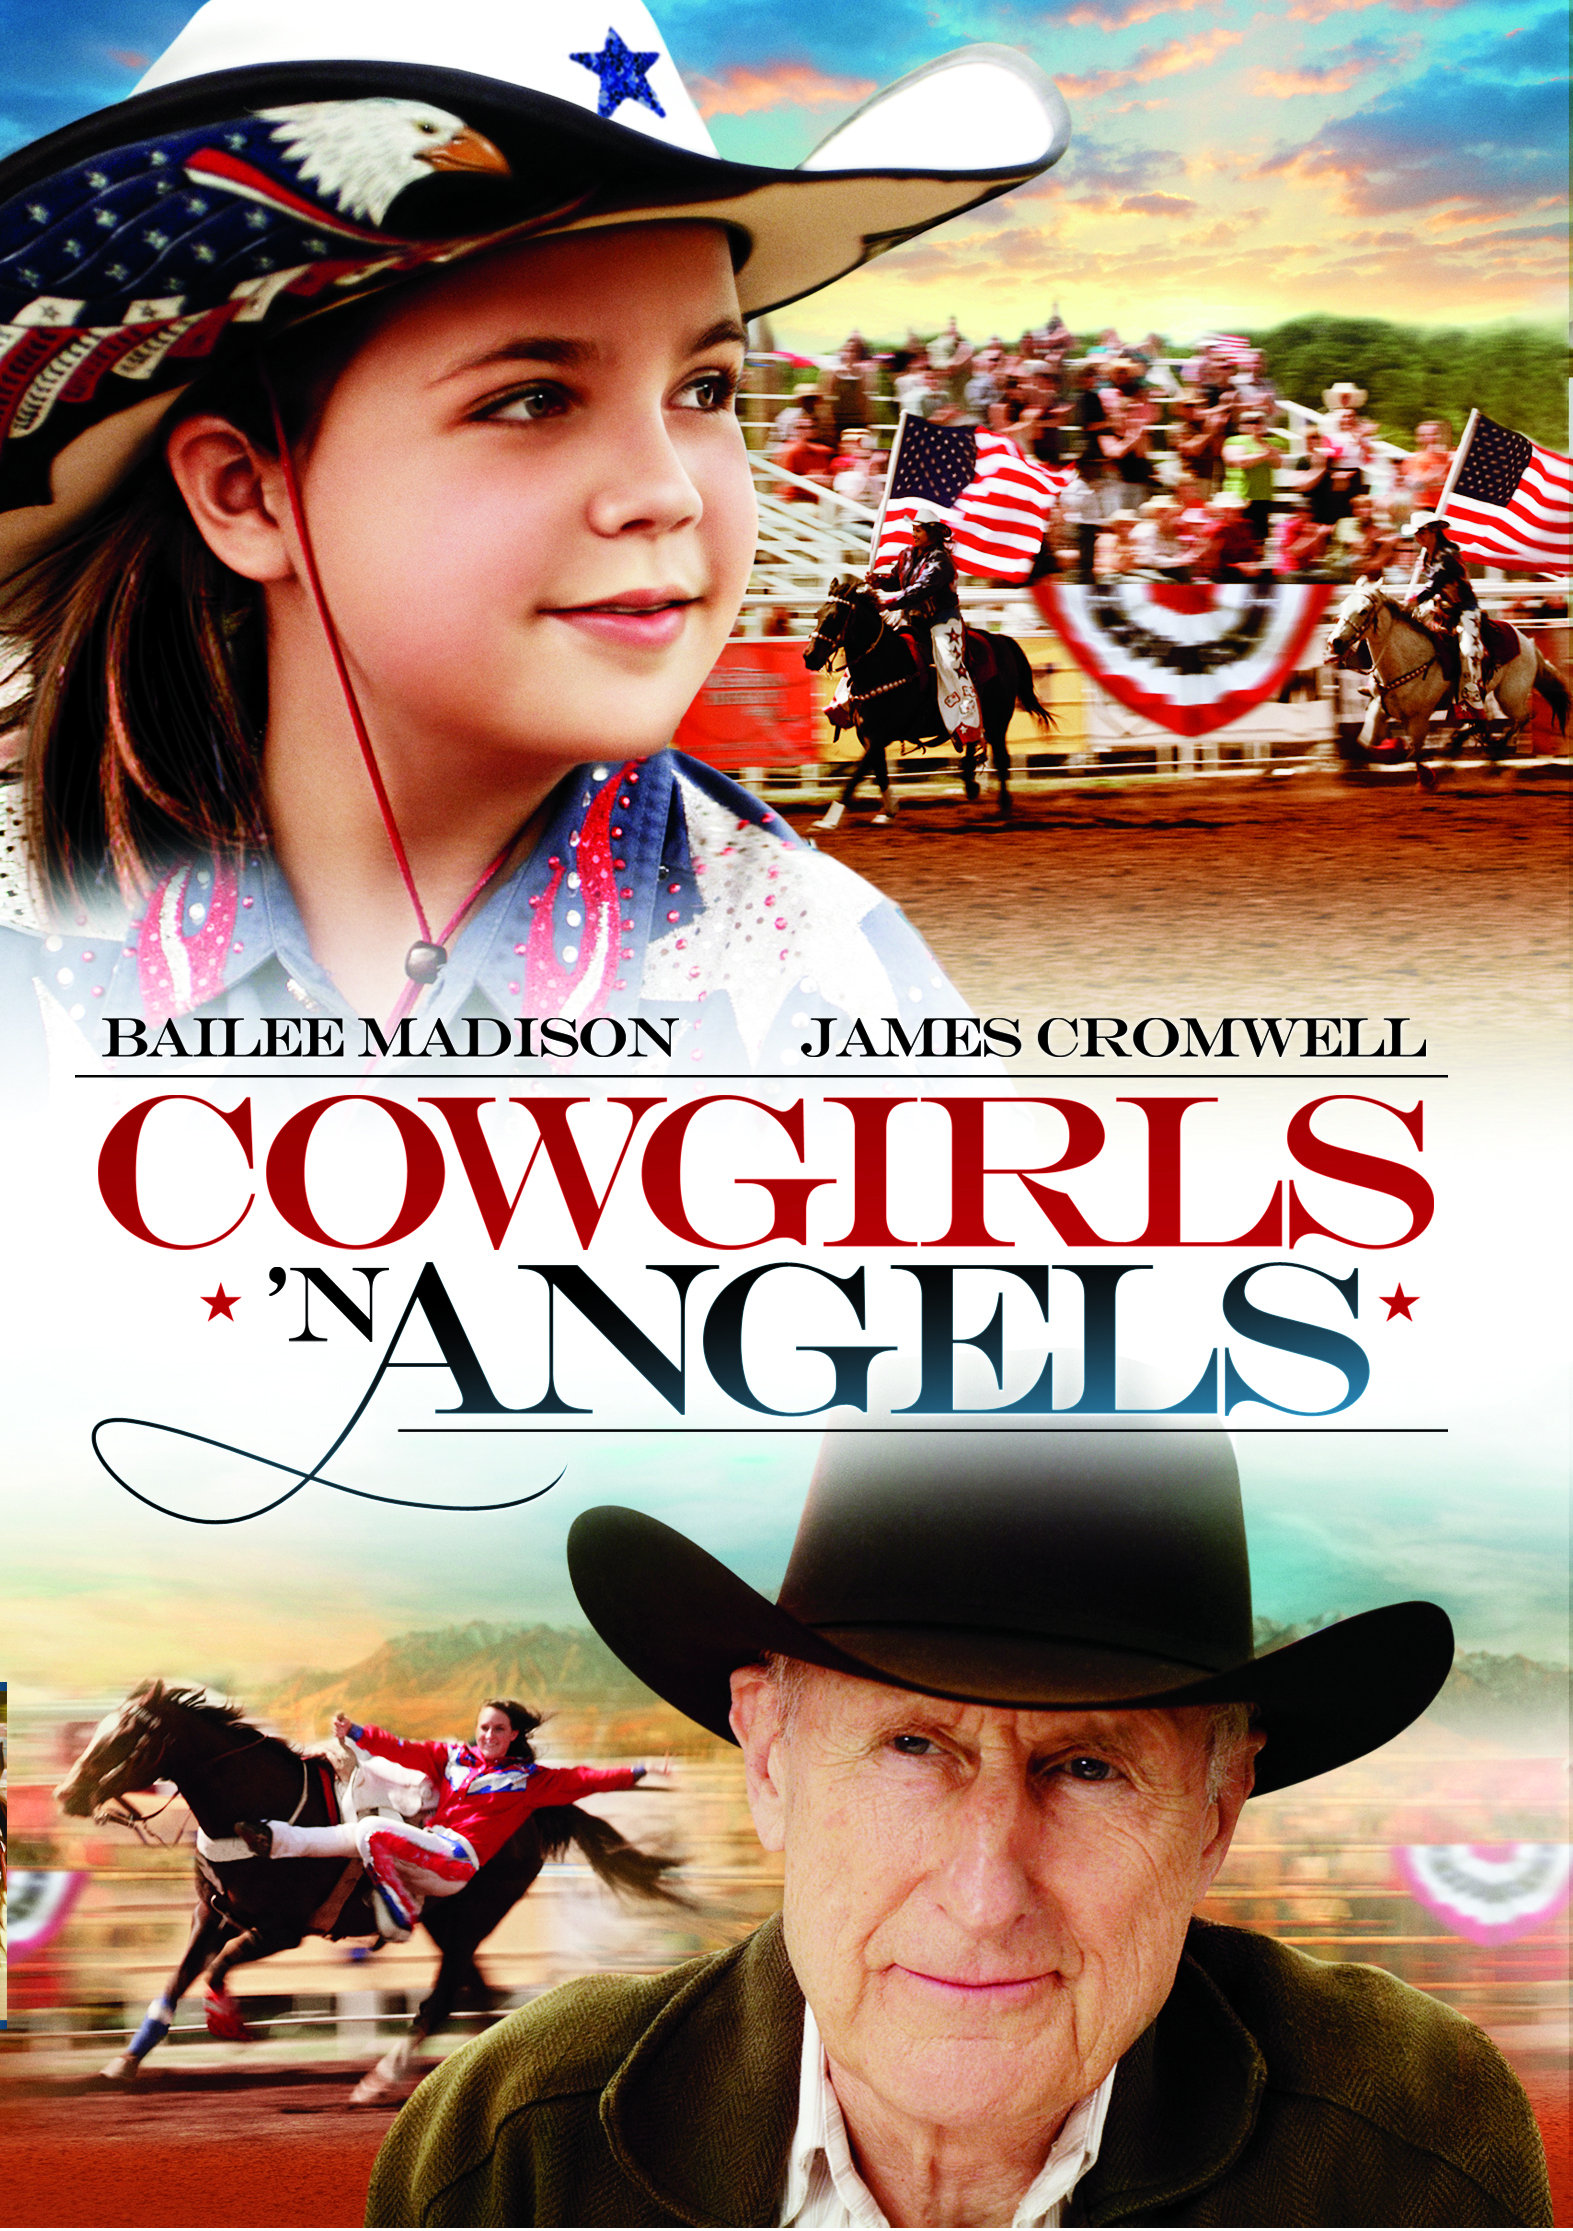 Cowgirls 'n Angels (2012) Screenshot 1